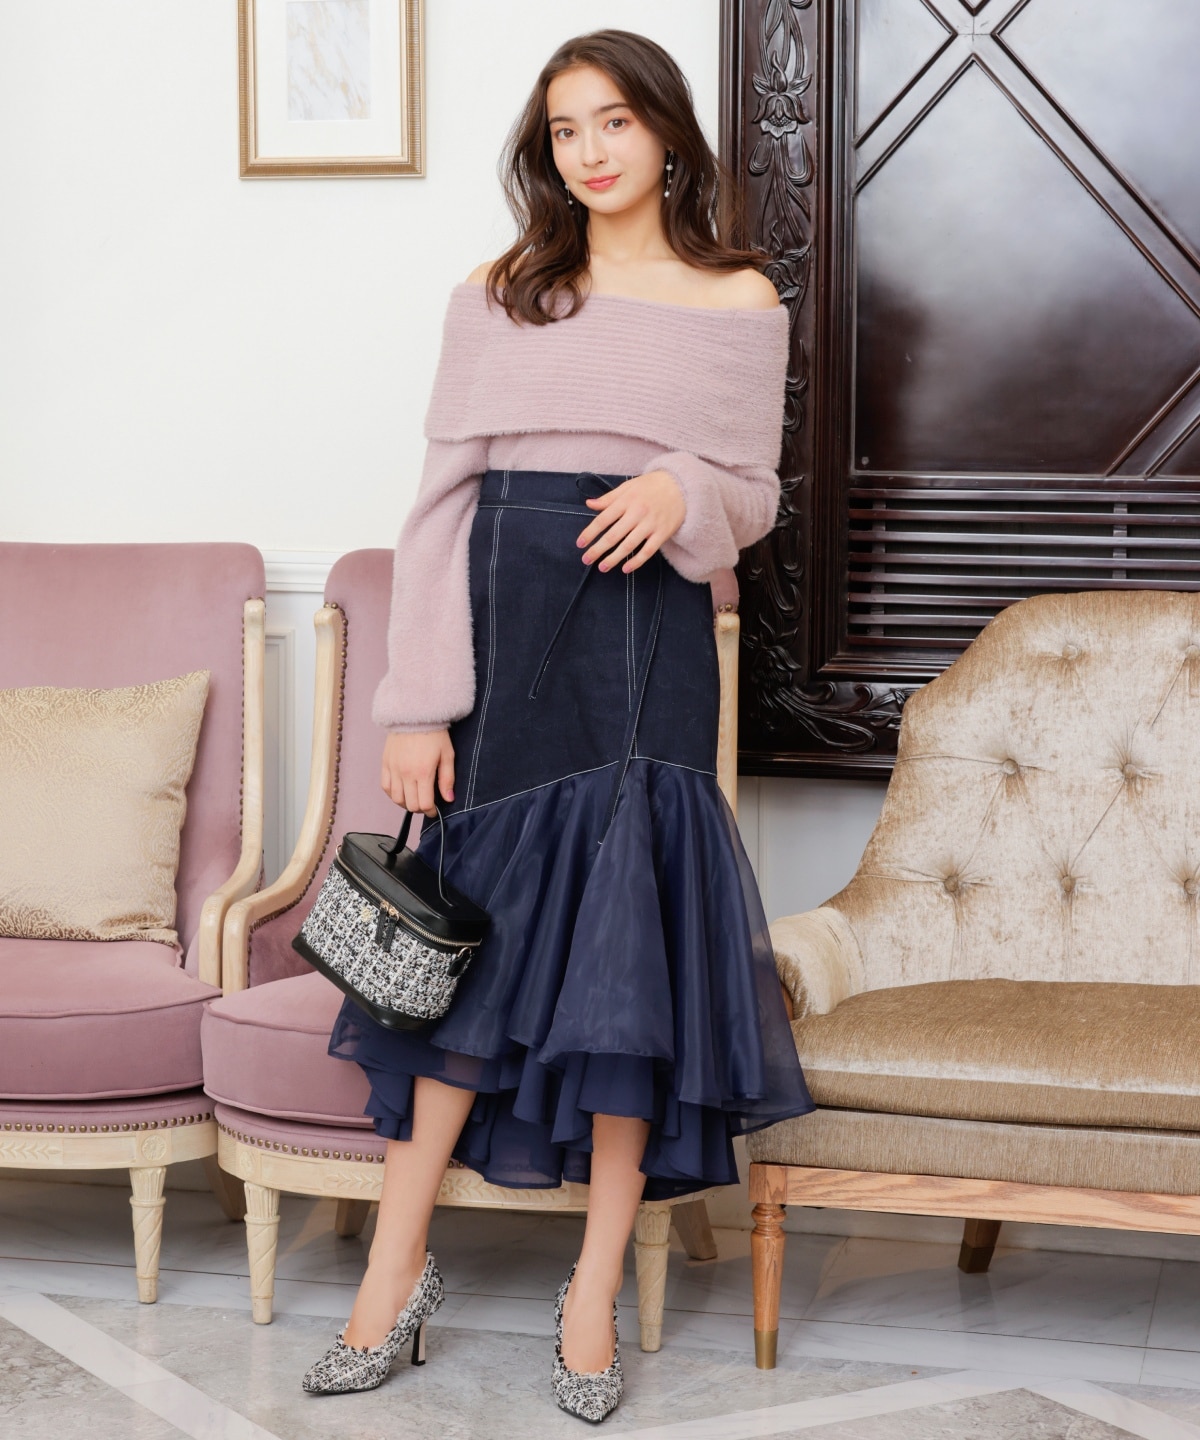 裾オーガンジースカート|WILLSELECTION(ウィルセレクション)の通販 